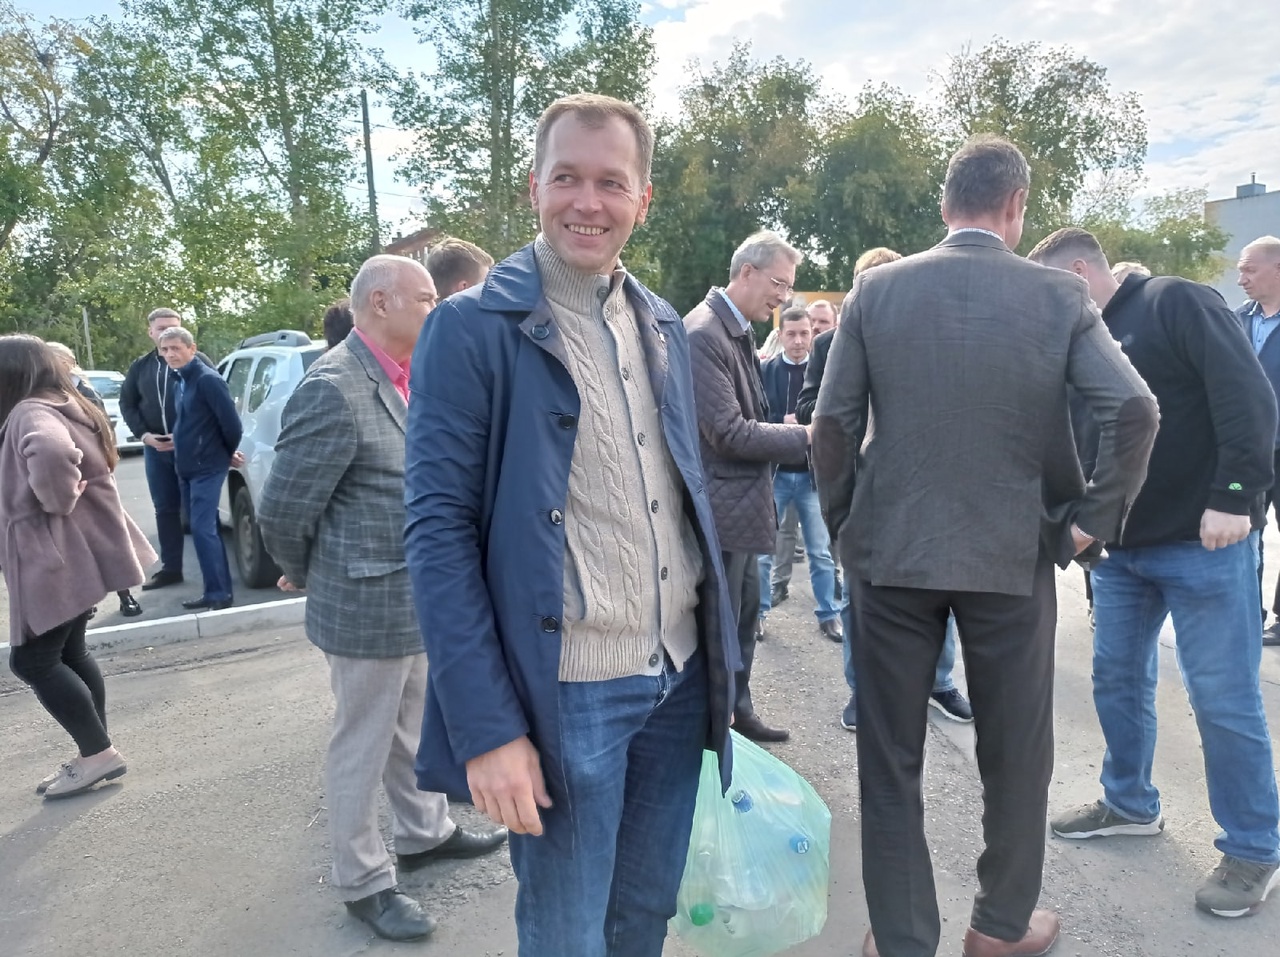 В Омске открылся первый экопункт, где можно сдать мусор за деньги #Новости #Общество #Омск